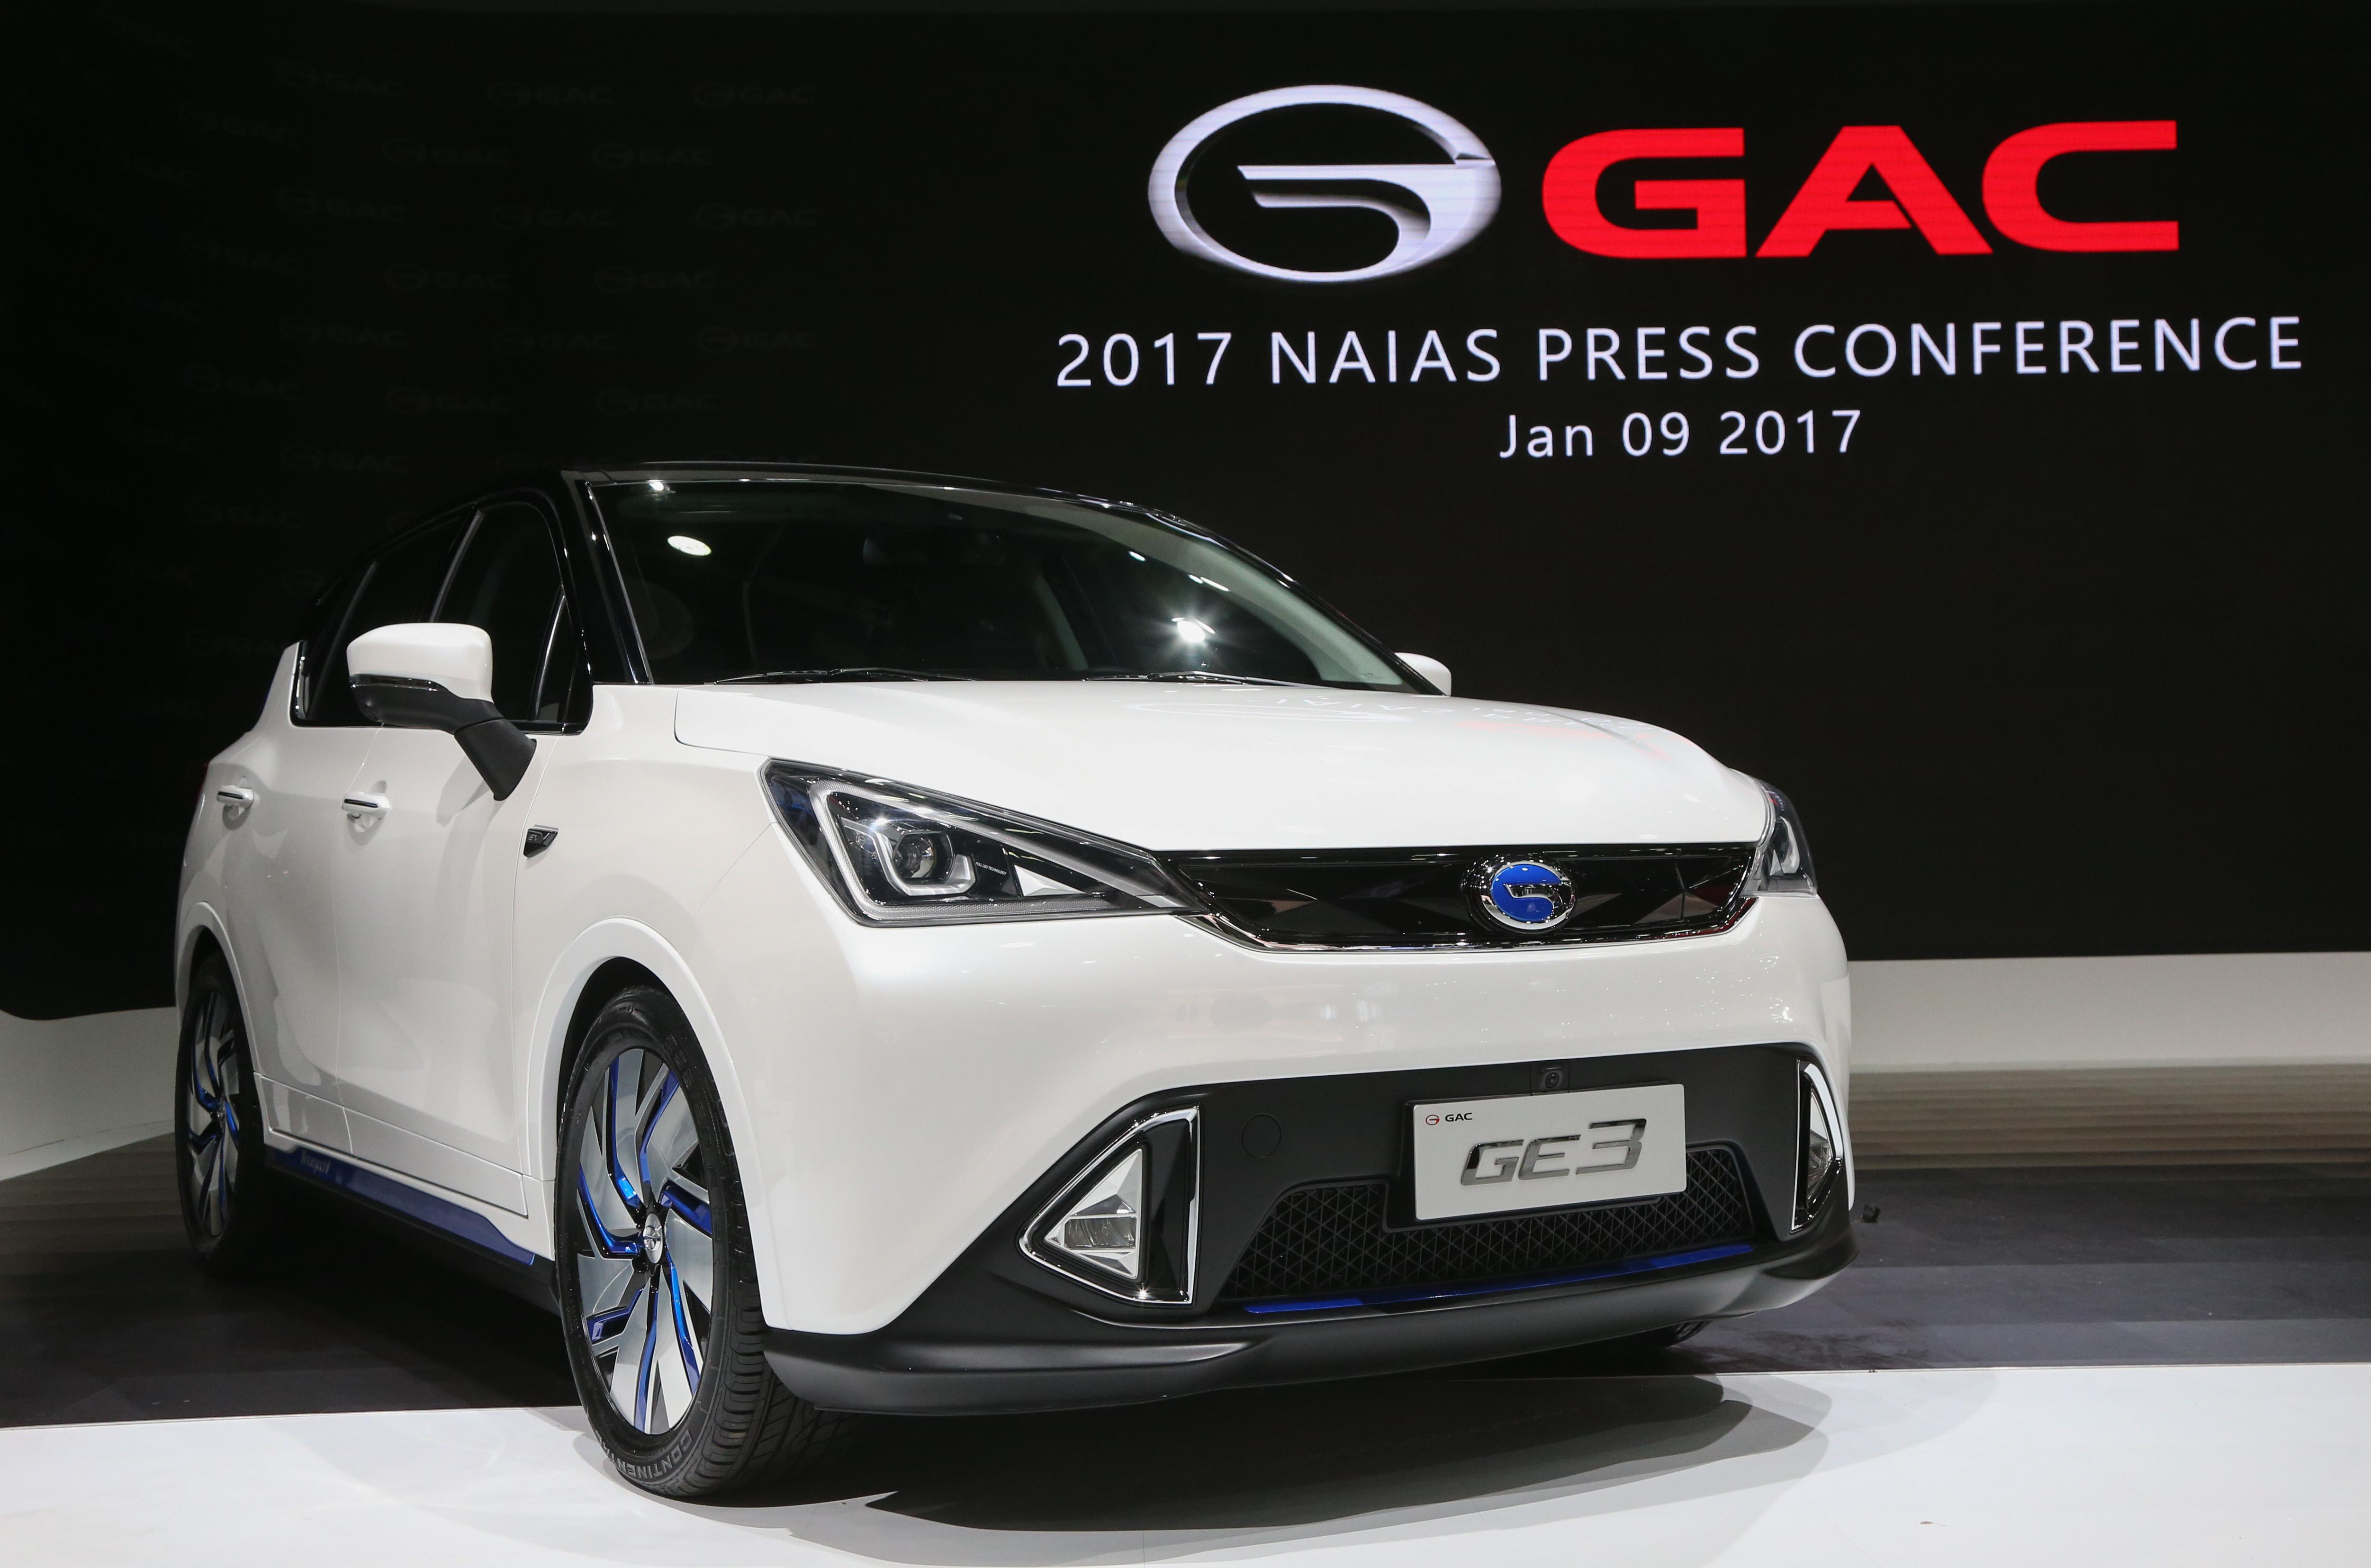 广汽传祺带来了旗下全新纯电动新能源suv车型ge3,与全球汽车消费者